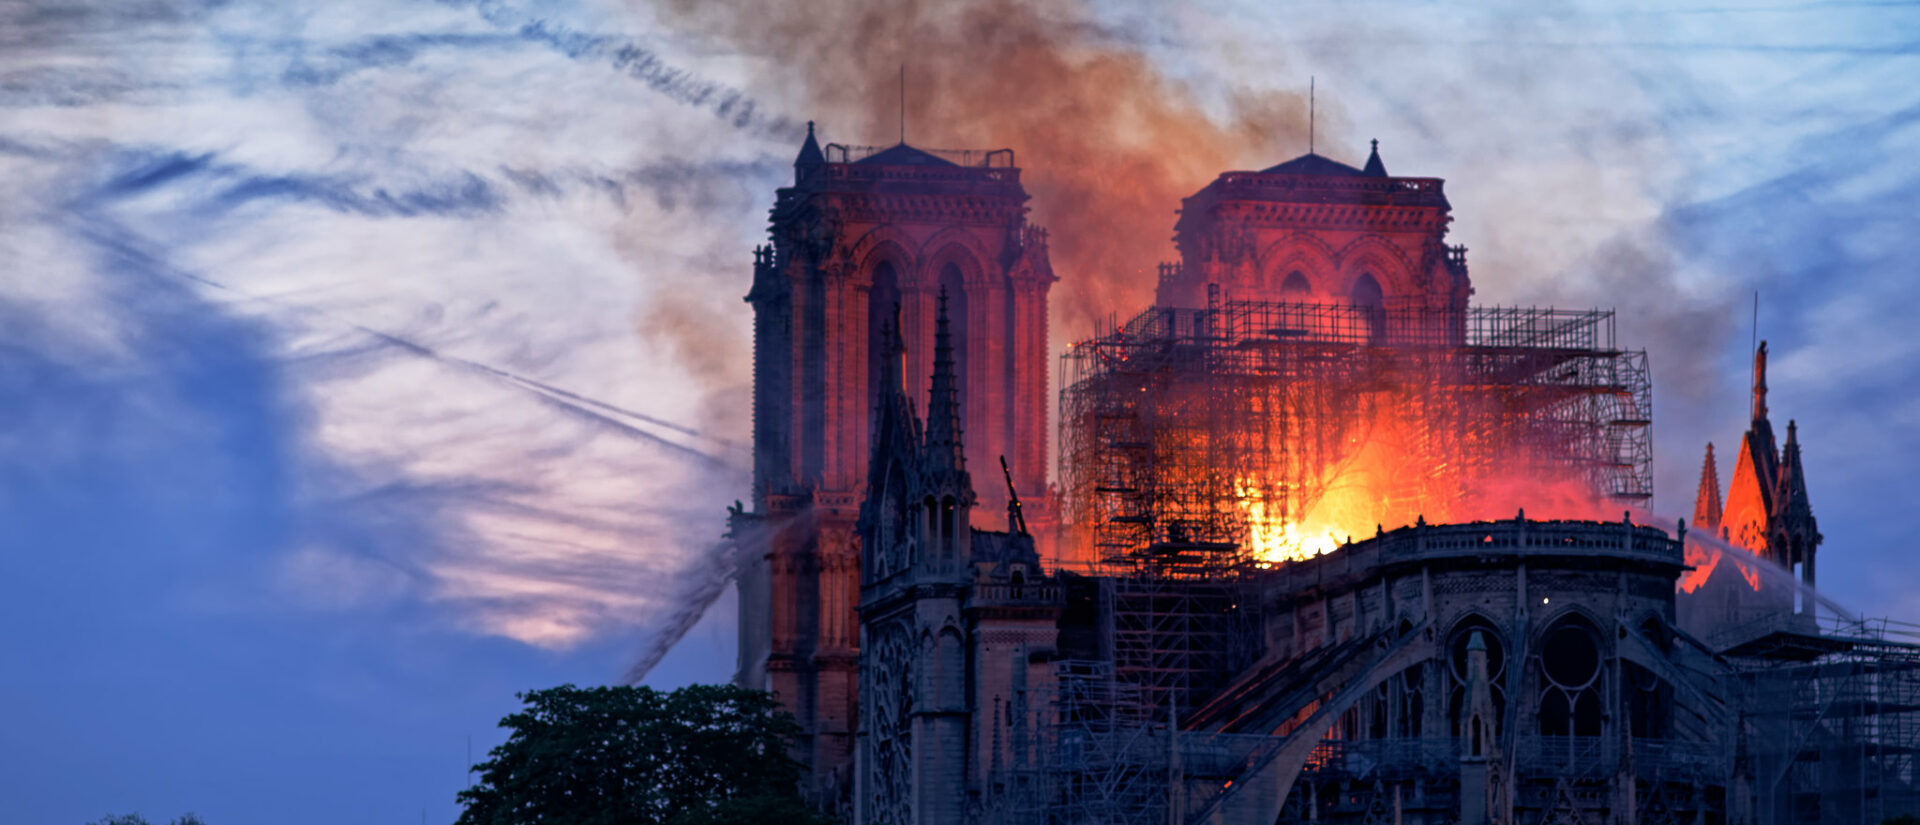 L'incendie de Notre-Dame de Paris, le 15 avril 2019, a-t-elle été le symbole de ce qui se passe dans l'Eglise? | © Olivier Mabelly/Flickr/CC BY-NC 2.0